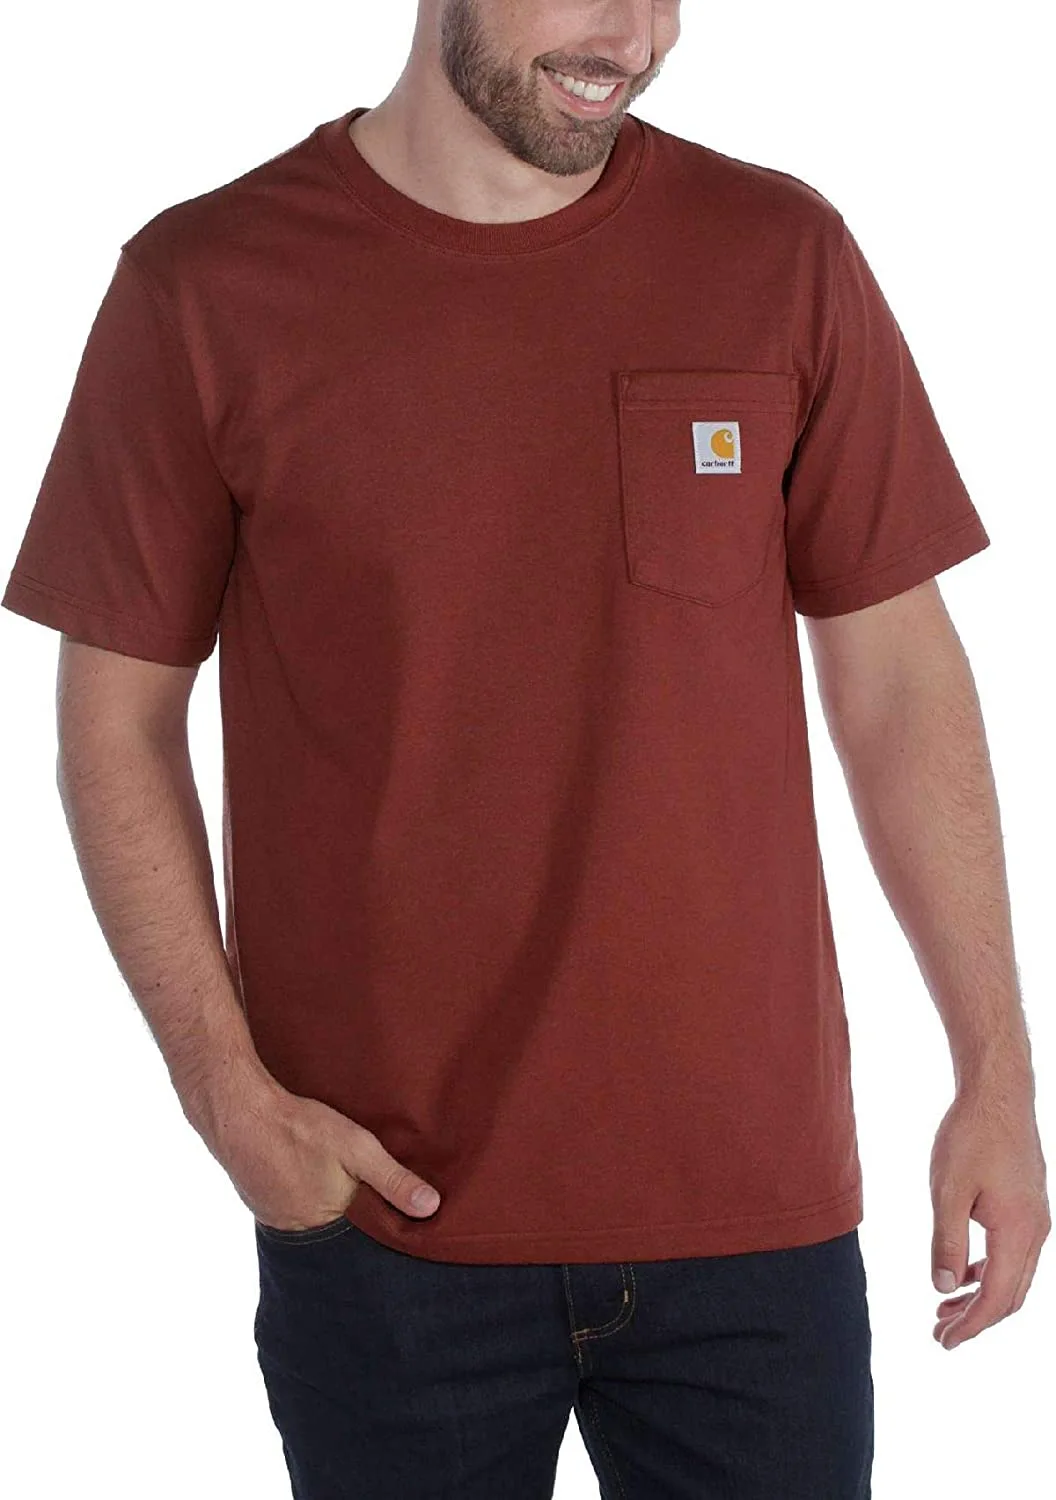 Stile Outfit da Uomo T-Shirt Rossa